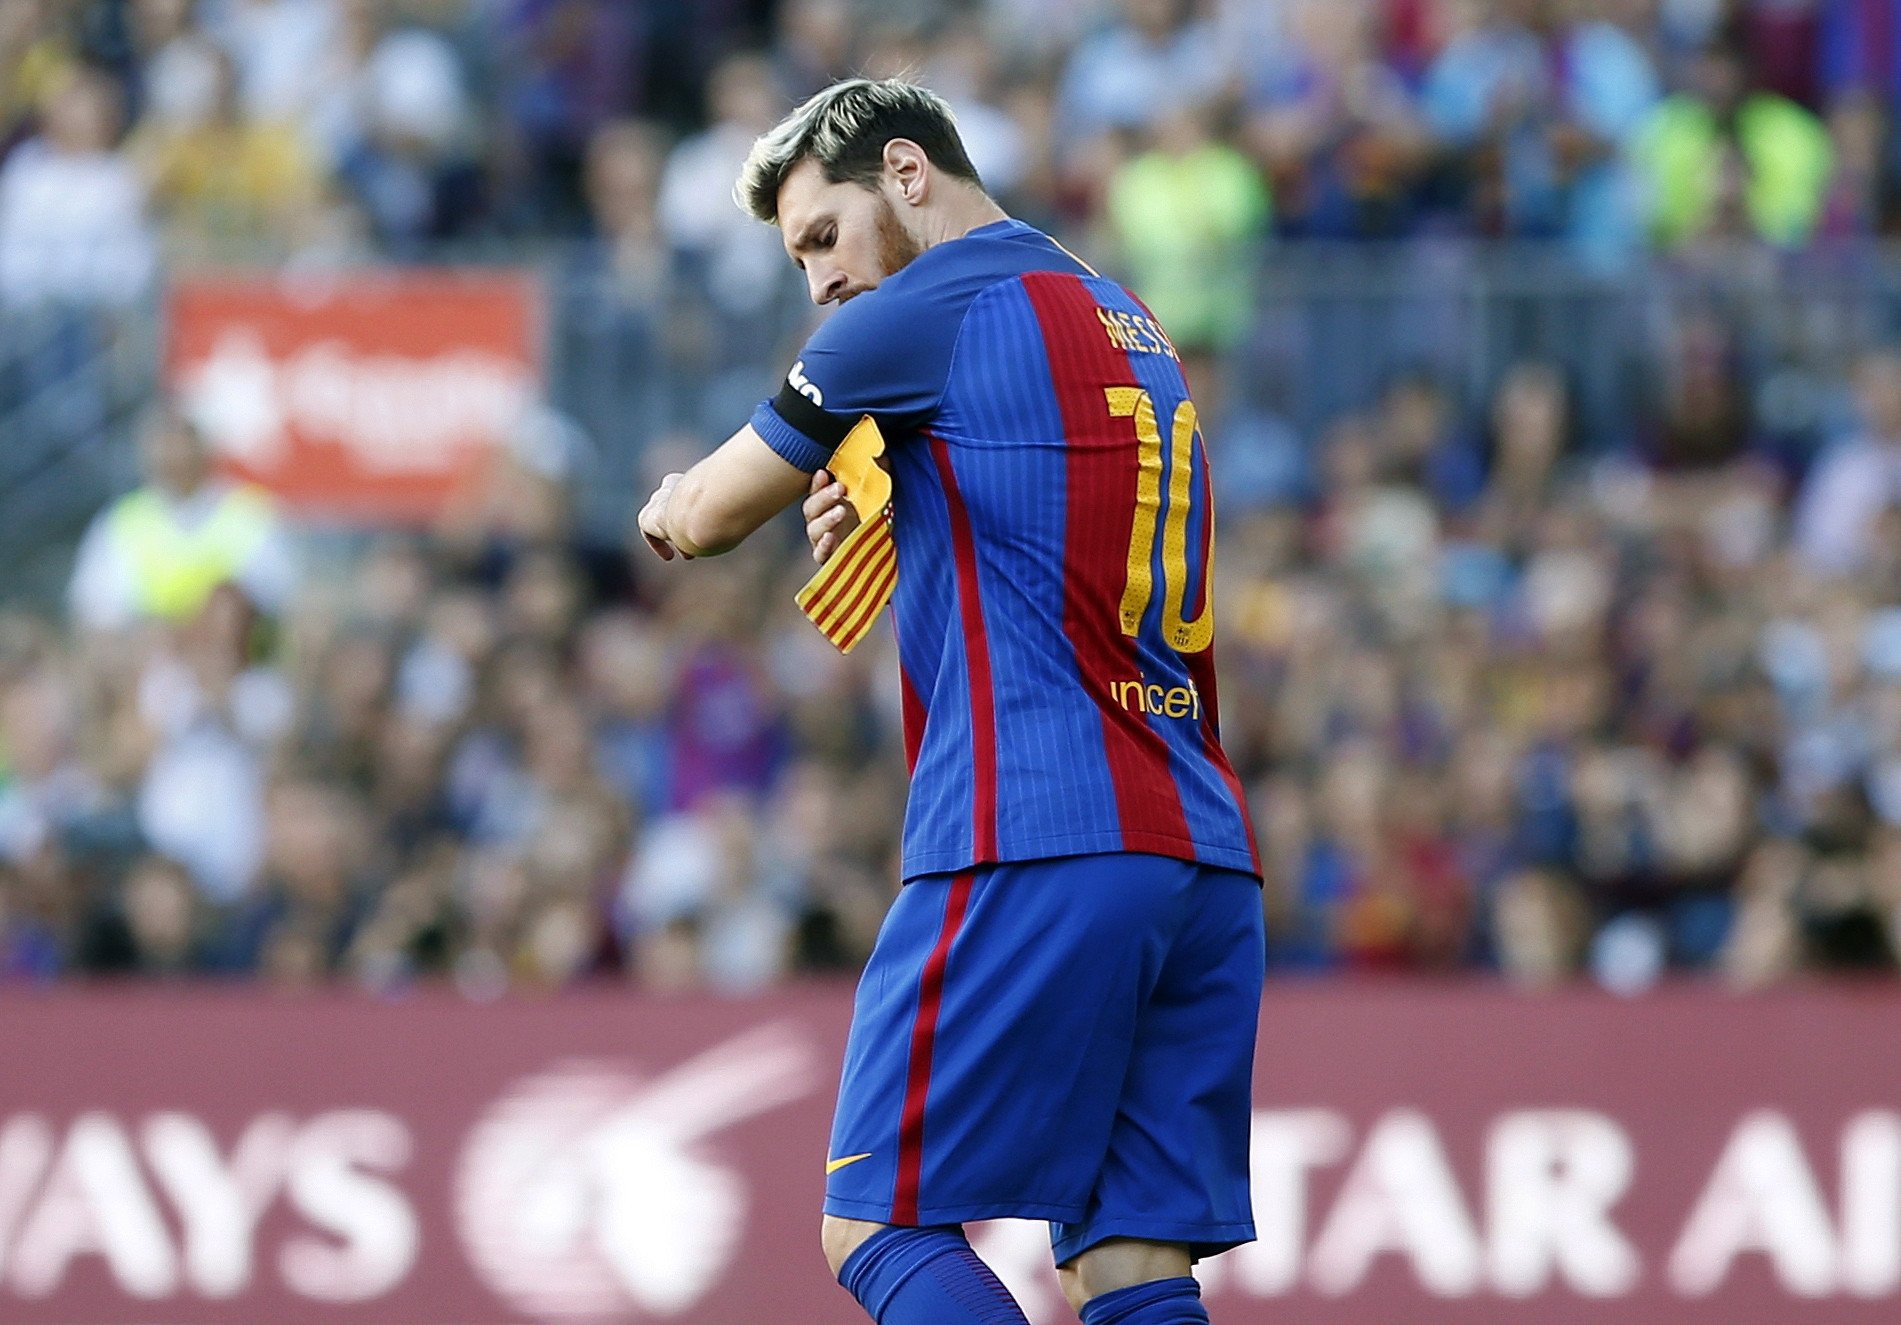 El Barça repeteix capitans i l'afició exigeix que aquest jugador també ho sigui